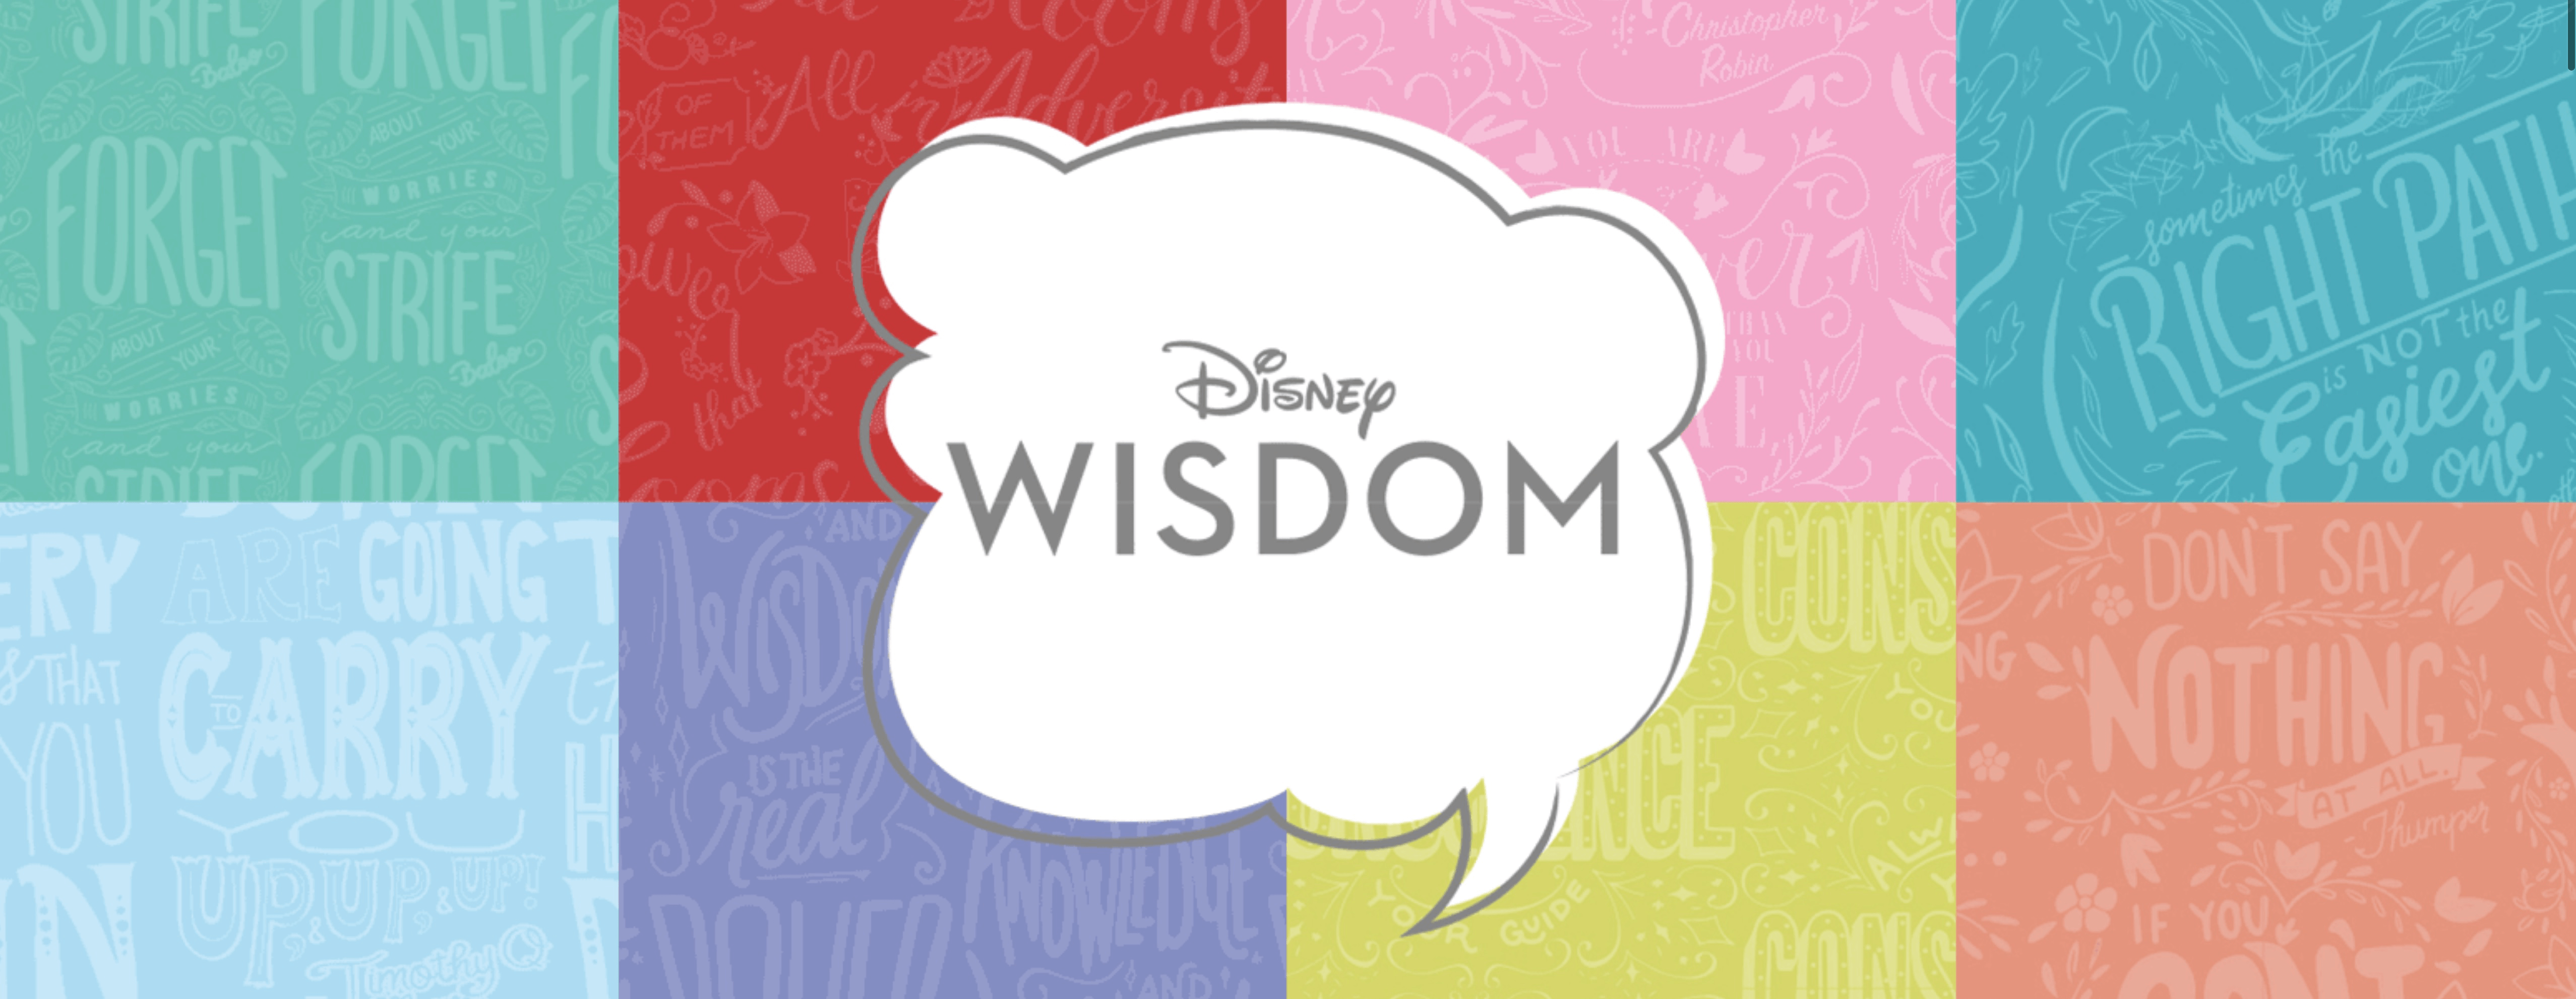 Disney Wisdom Aladdin Mug 